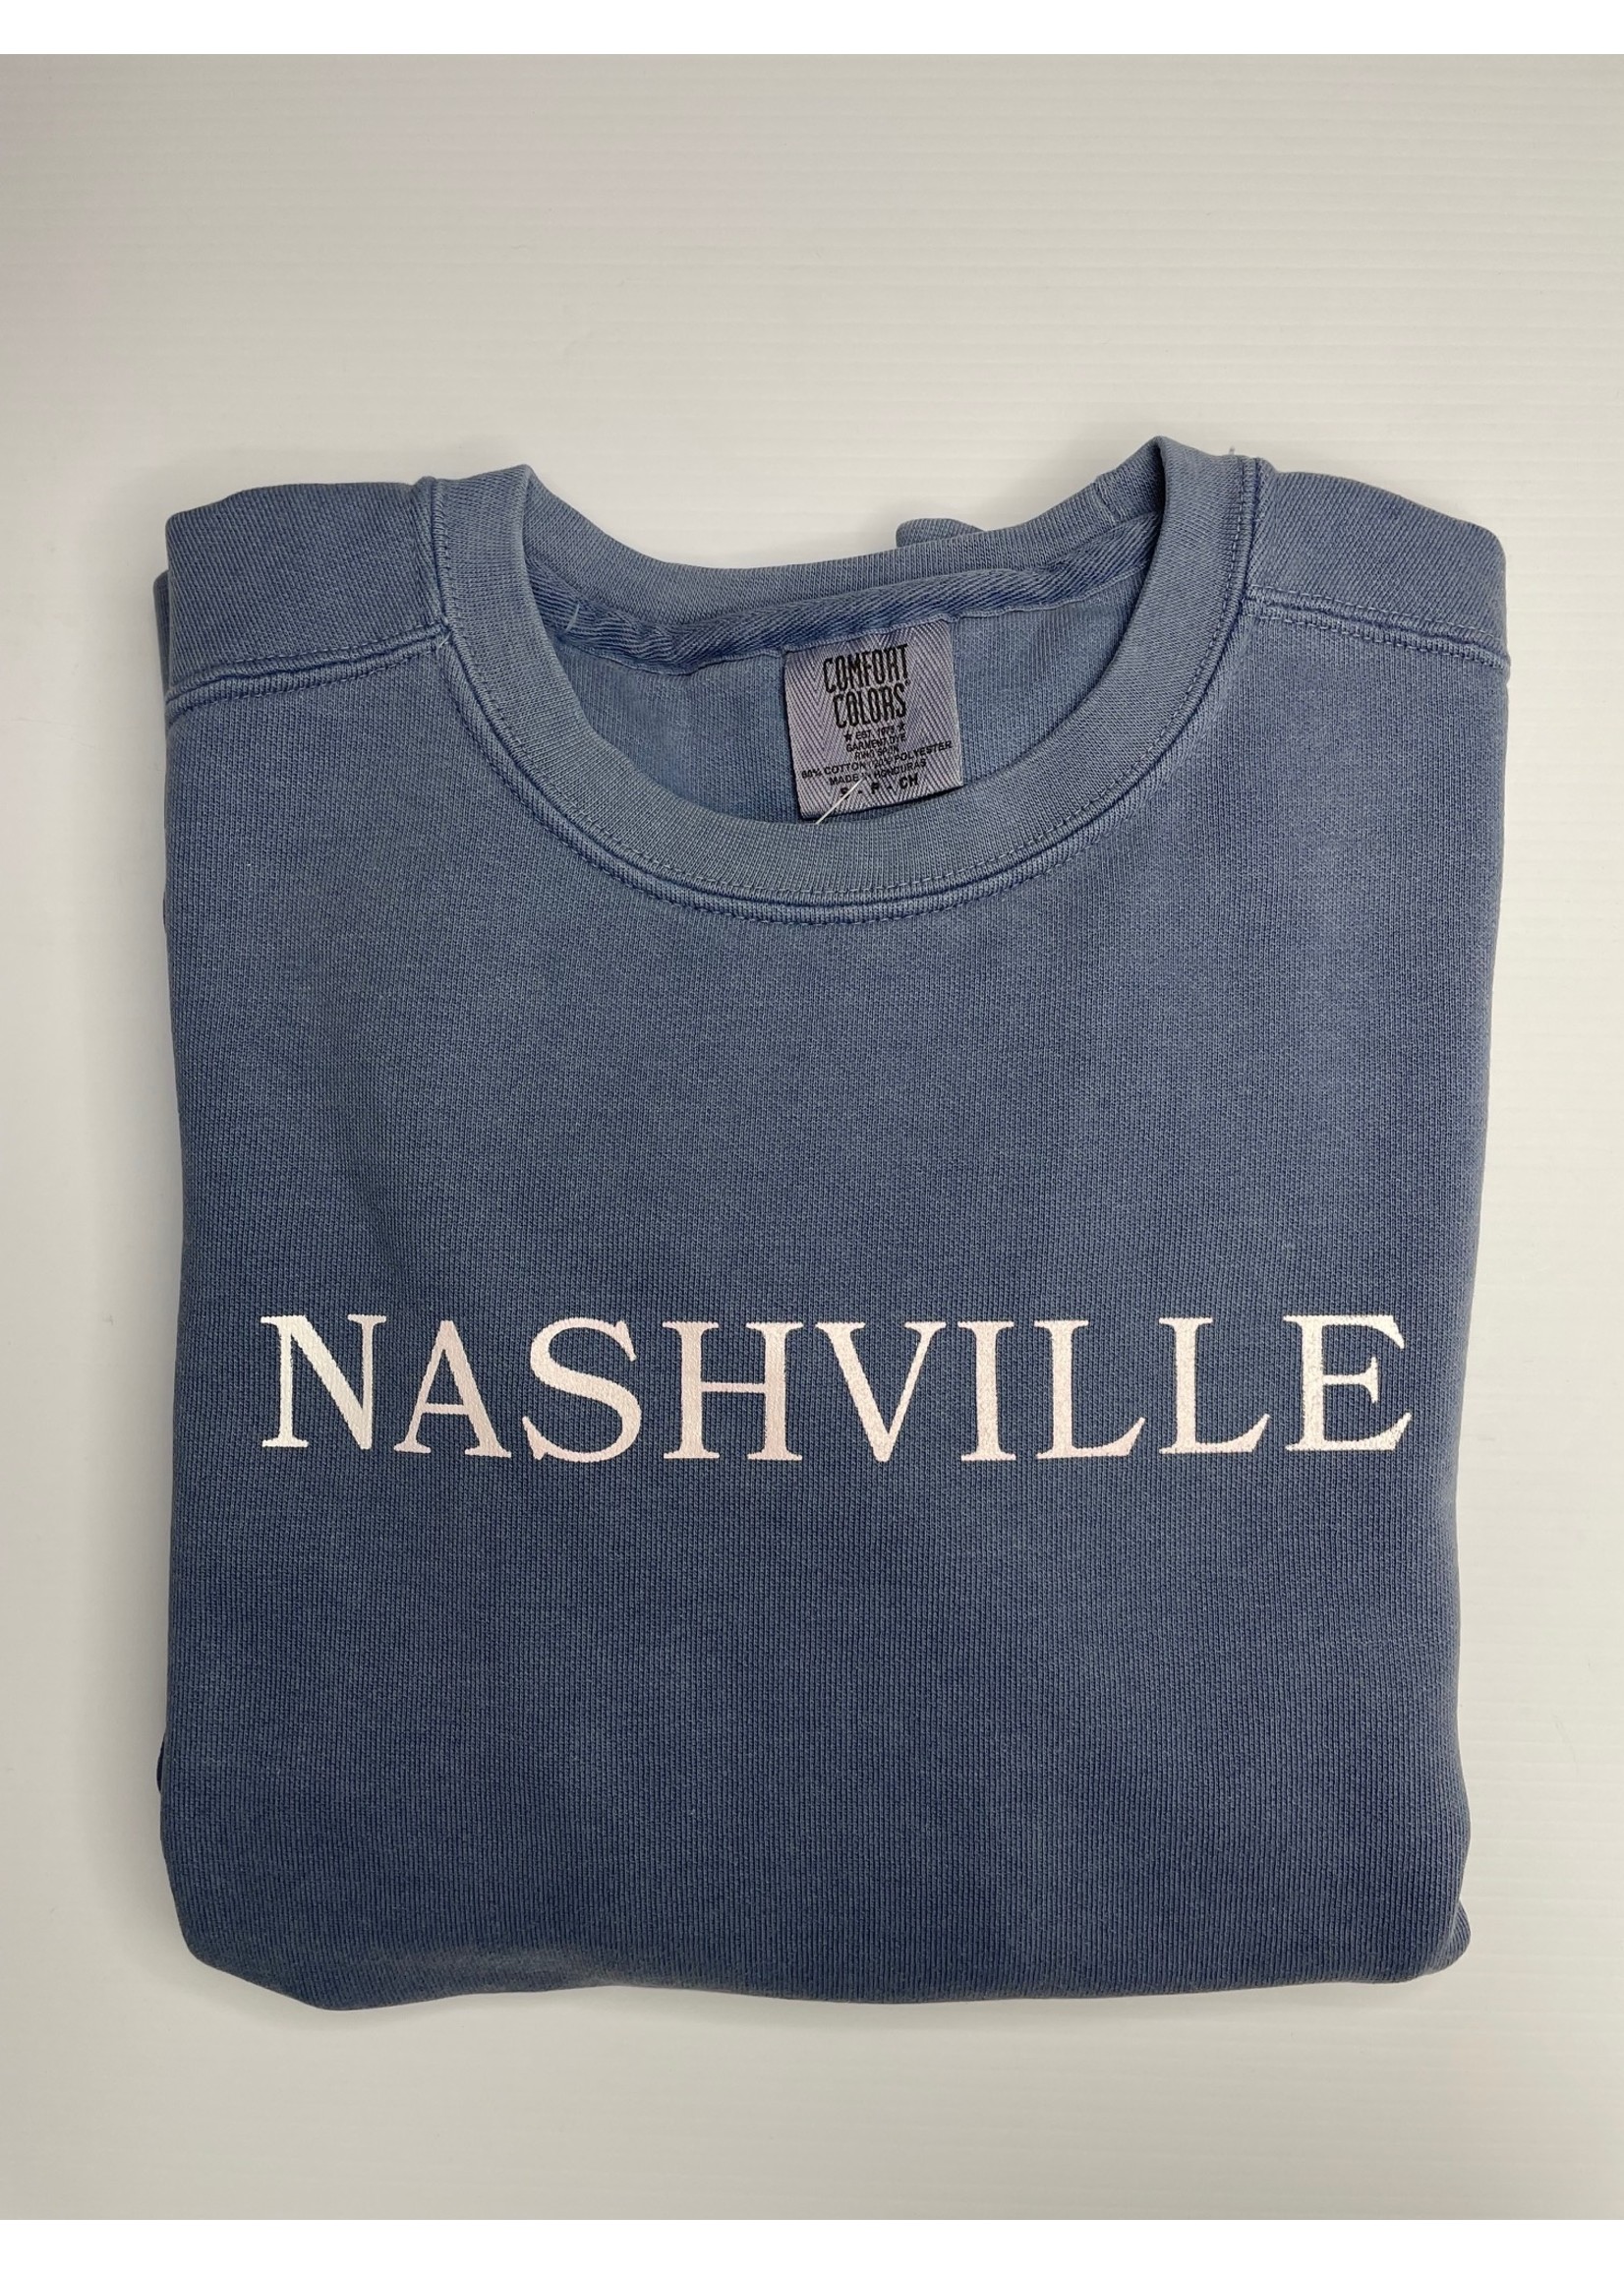 Simplistated Nashville Sweatshirt Adult